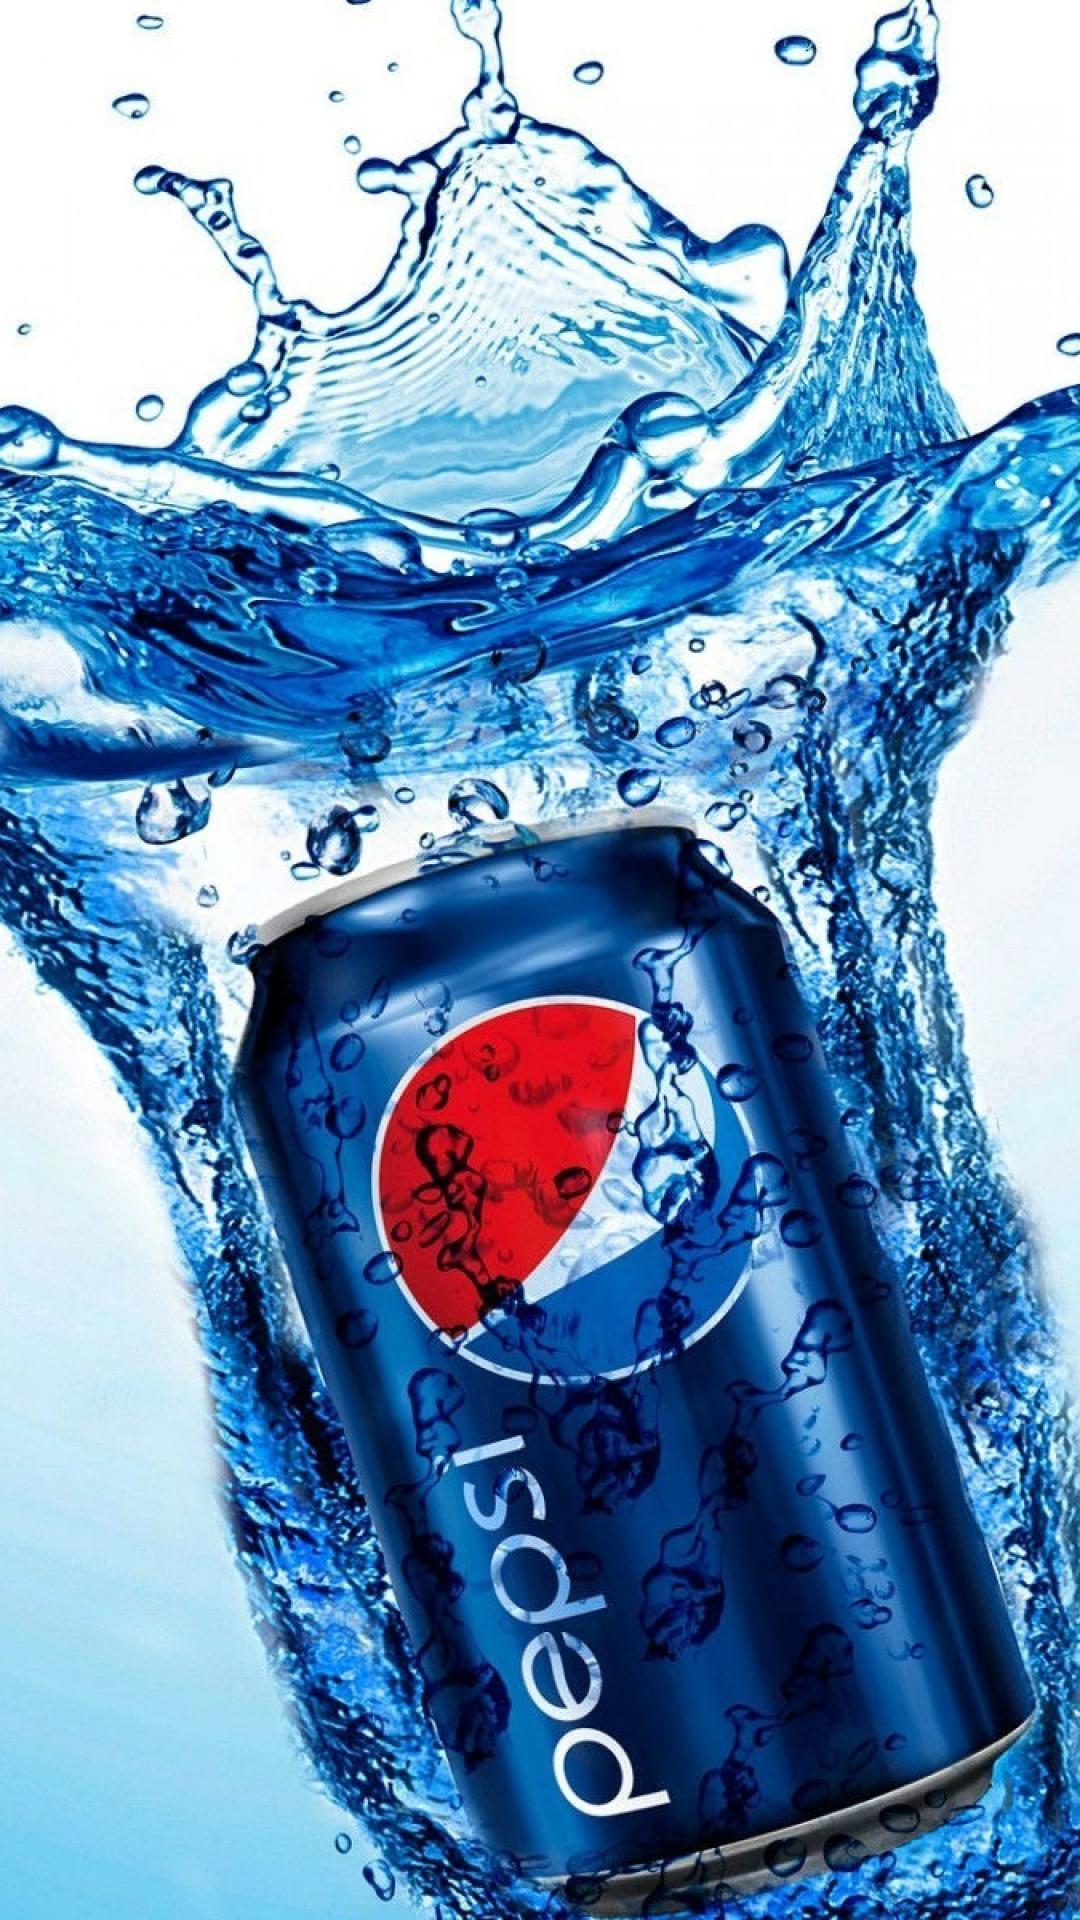 Pepsi Cola Wallpapers Wallpaper Cave - vrogue.co